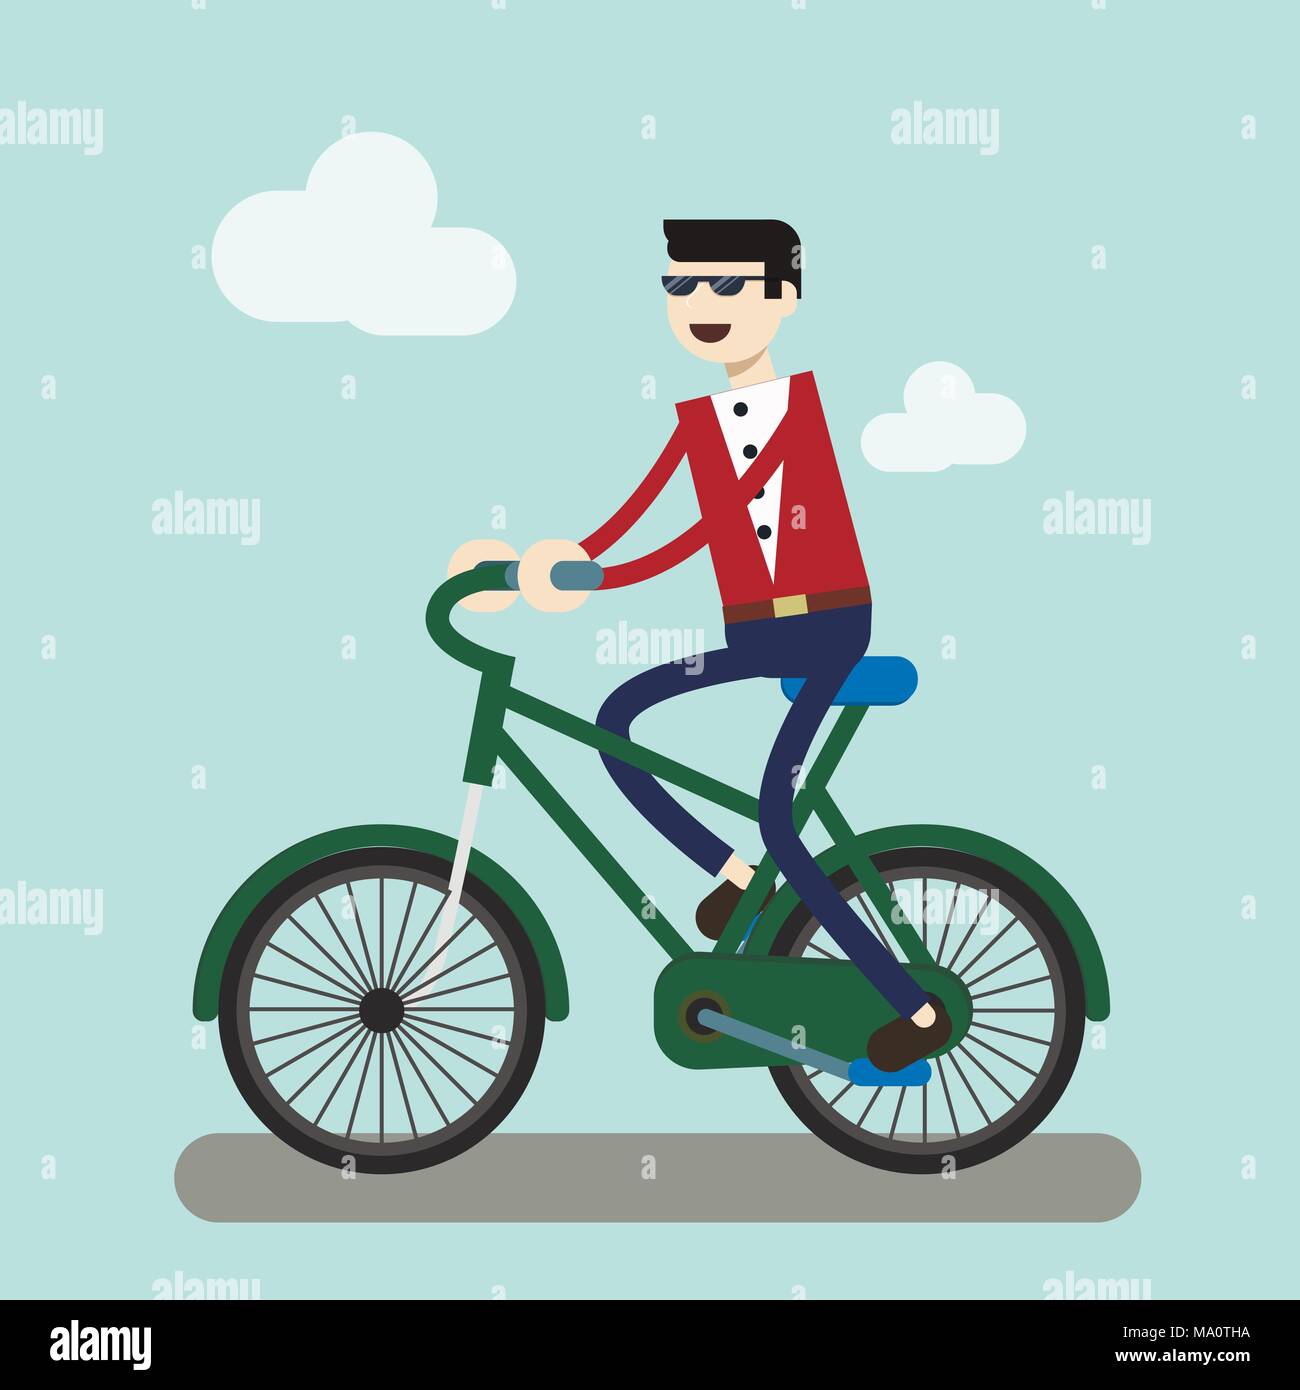 Business Mann auf dem Fahrrad fahren in der Stadt zu arbeiten. Energieeinsparung für Welt. people business Konzept Stock Vektor